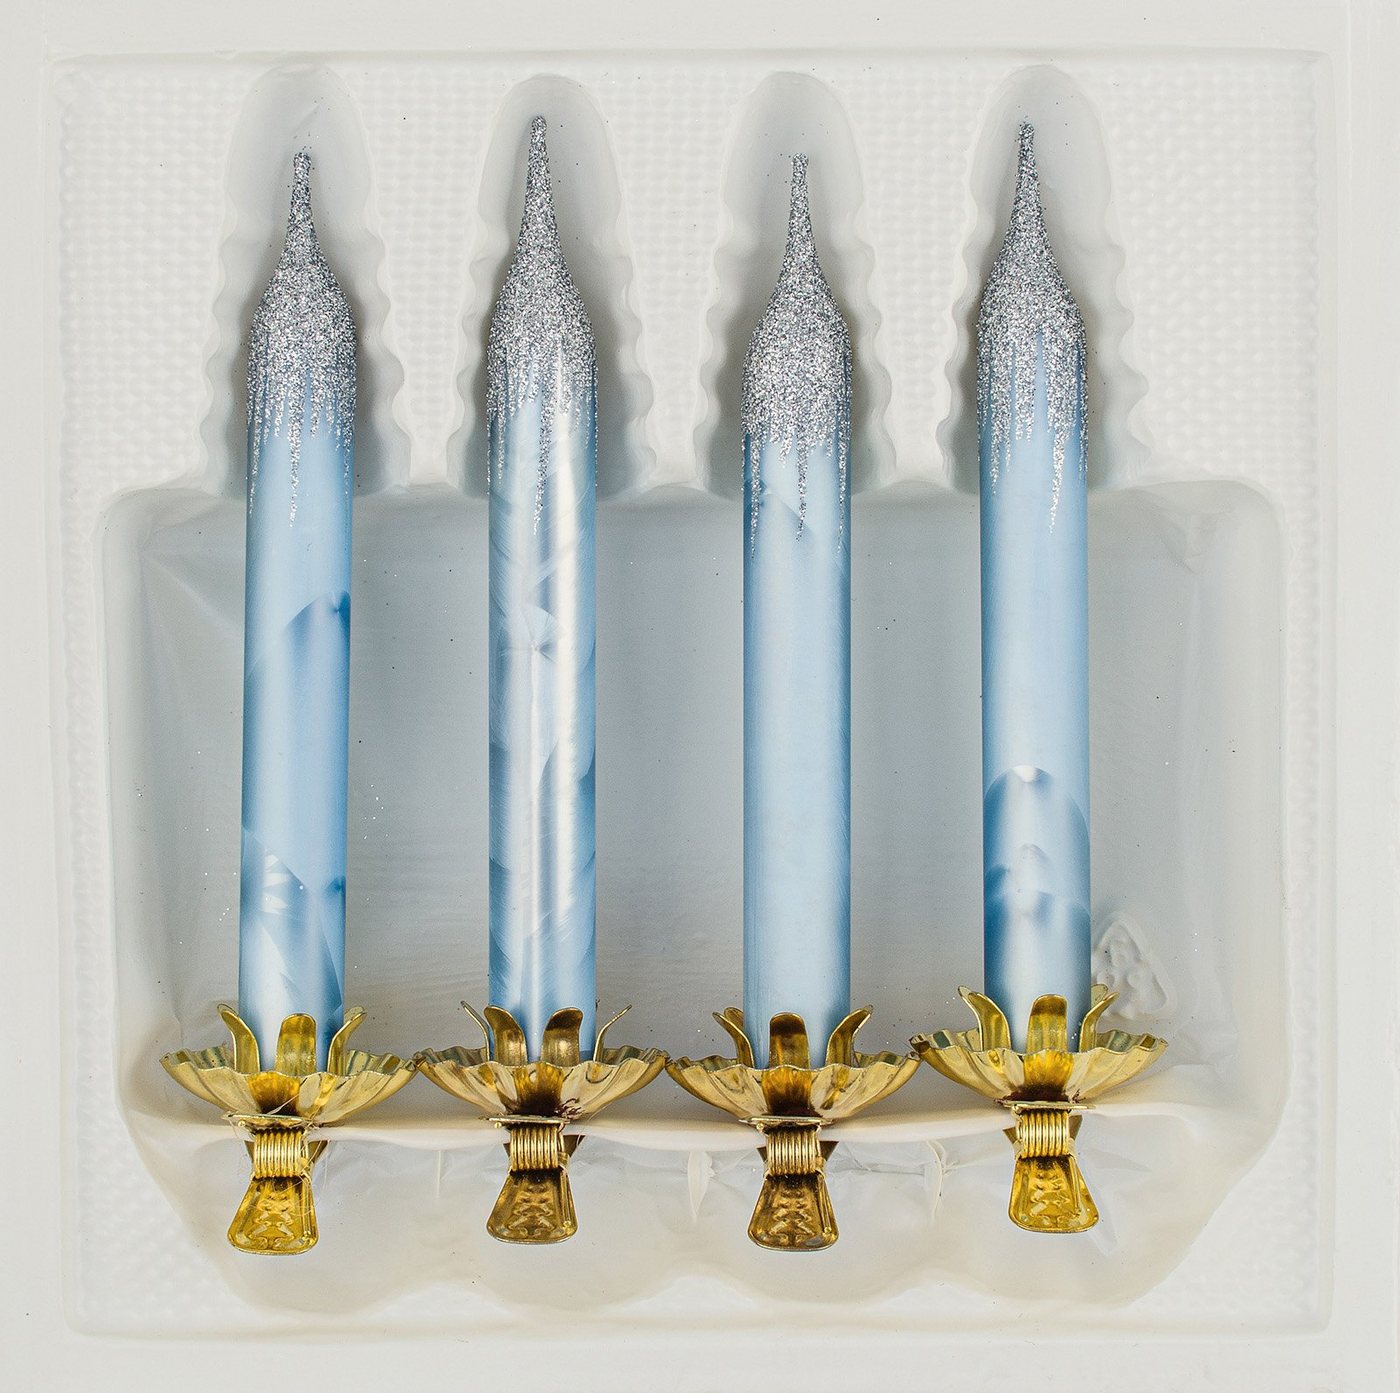 Navidacio Christbaumschmuck 4tlg. Glas-Baumkerzen Set in Ice Blau Silber" - Weihnachtsbaumkerzen" von Navidacio